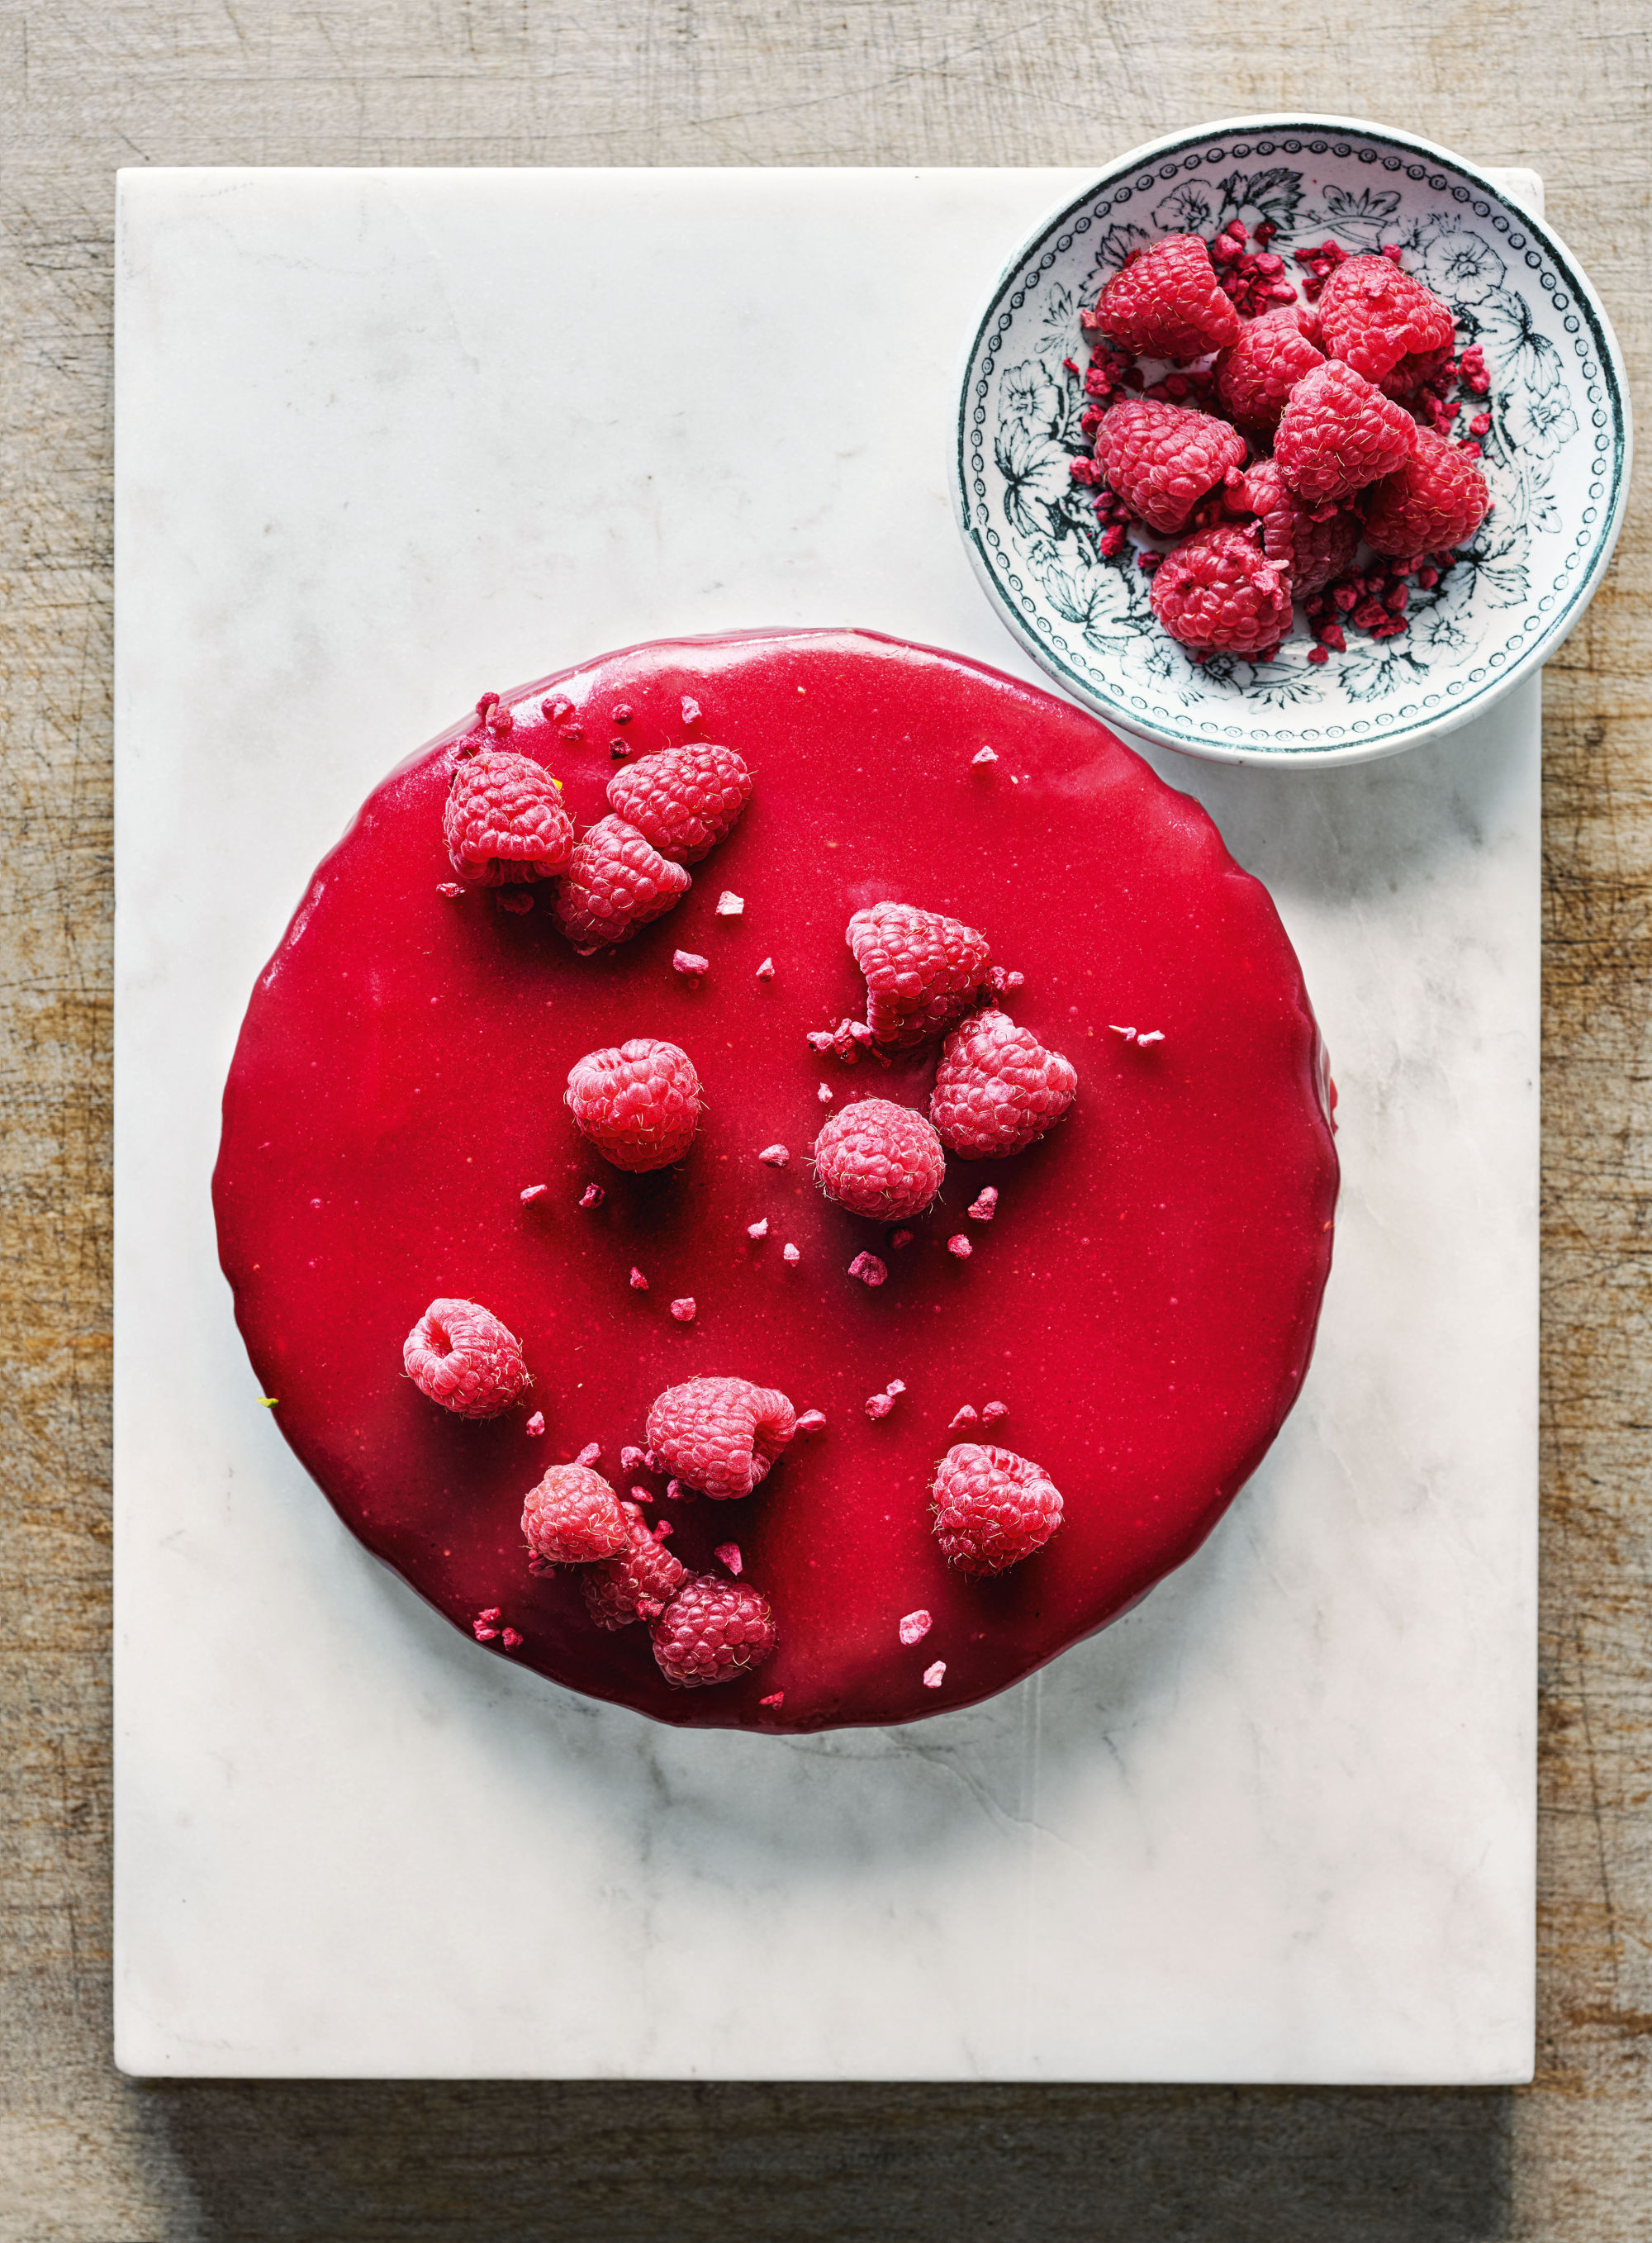 Chocolate truffle cake with rapsberry glaze. The raspberry glaze uses sheet gelatin